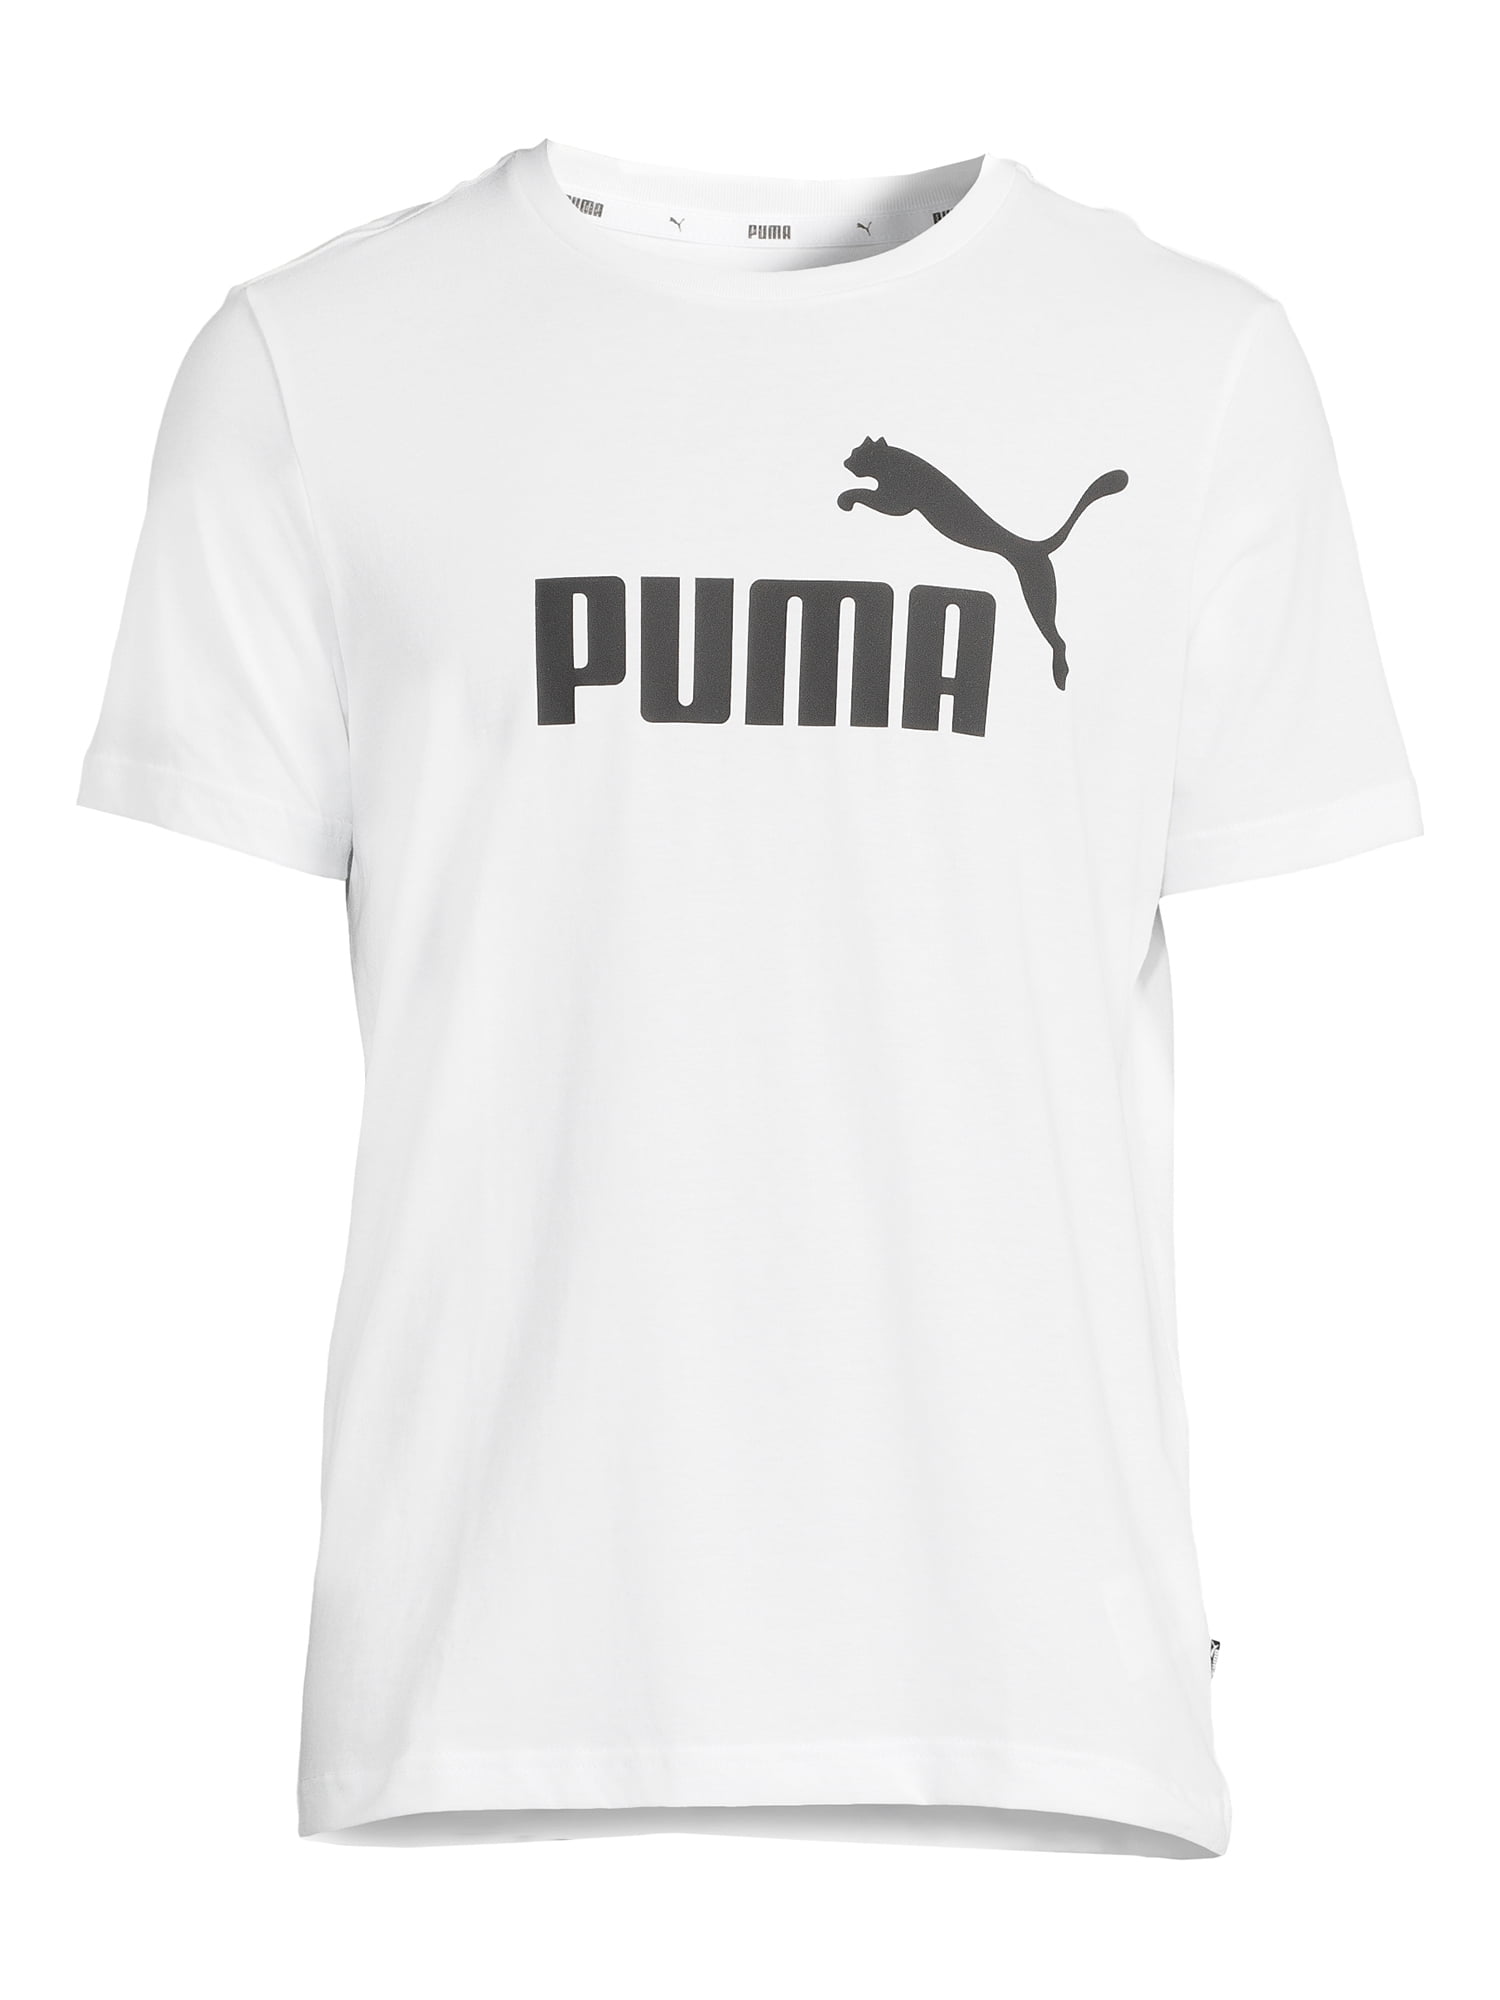 La tia de la USA - Camiseta PUMA HOMBRE : 80 mil pesos disponibles